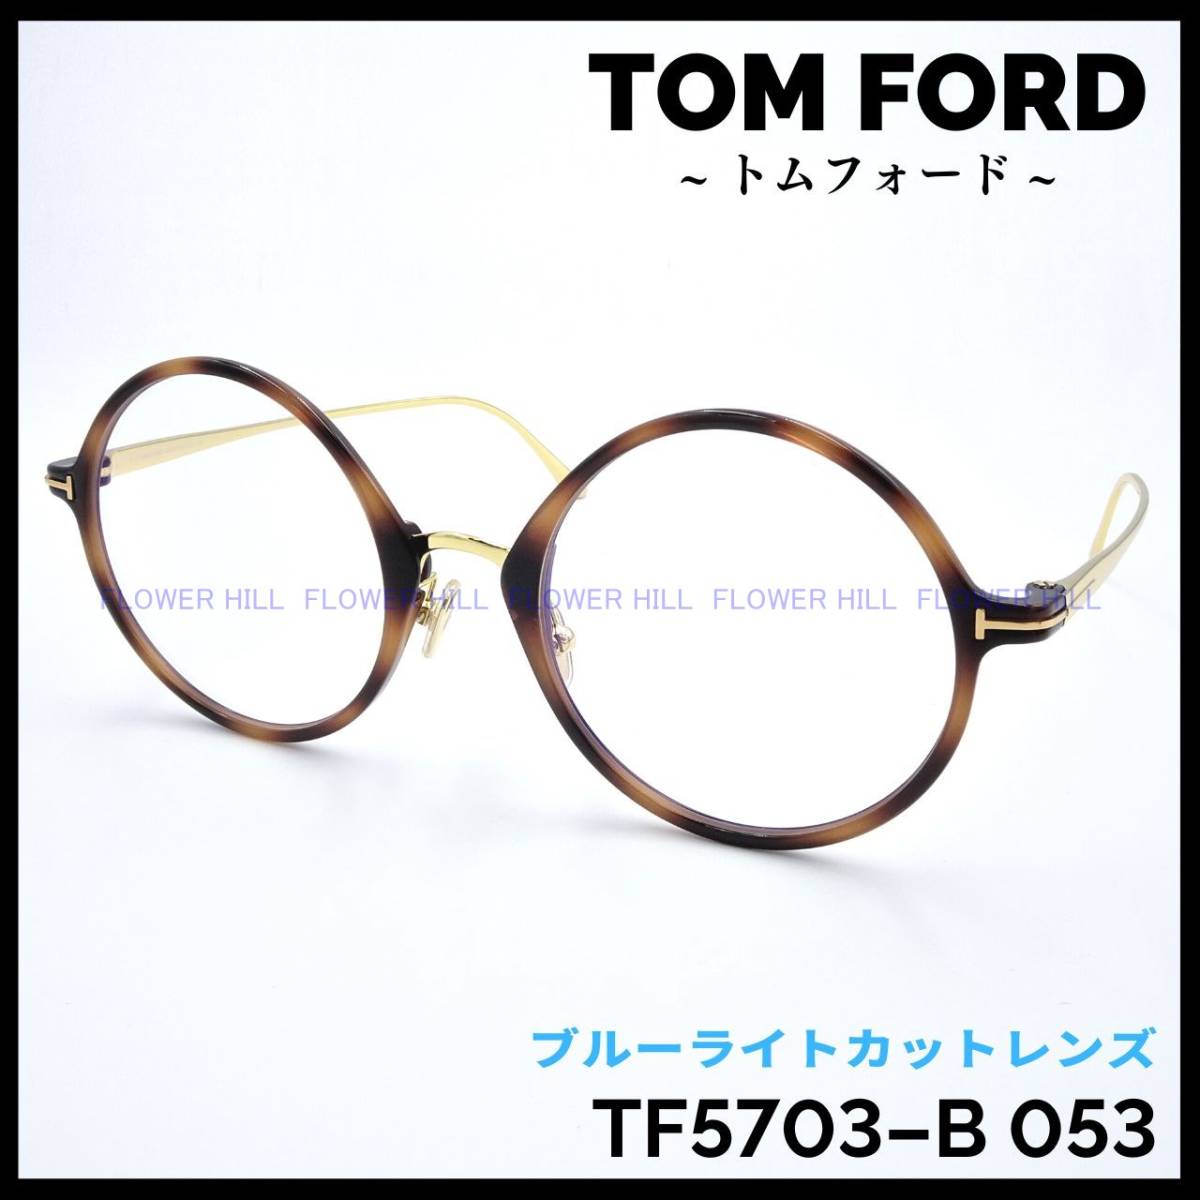 トムフォード TOM FORD TF5703-B 053 メガネ フレーム ブルーライト